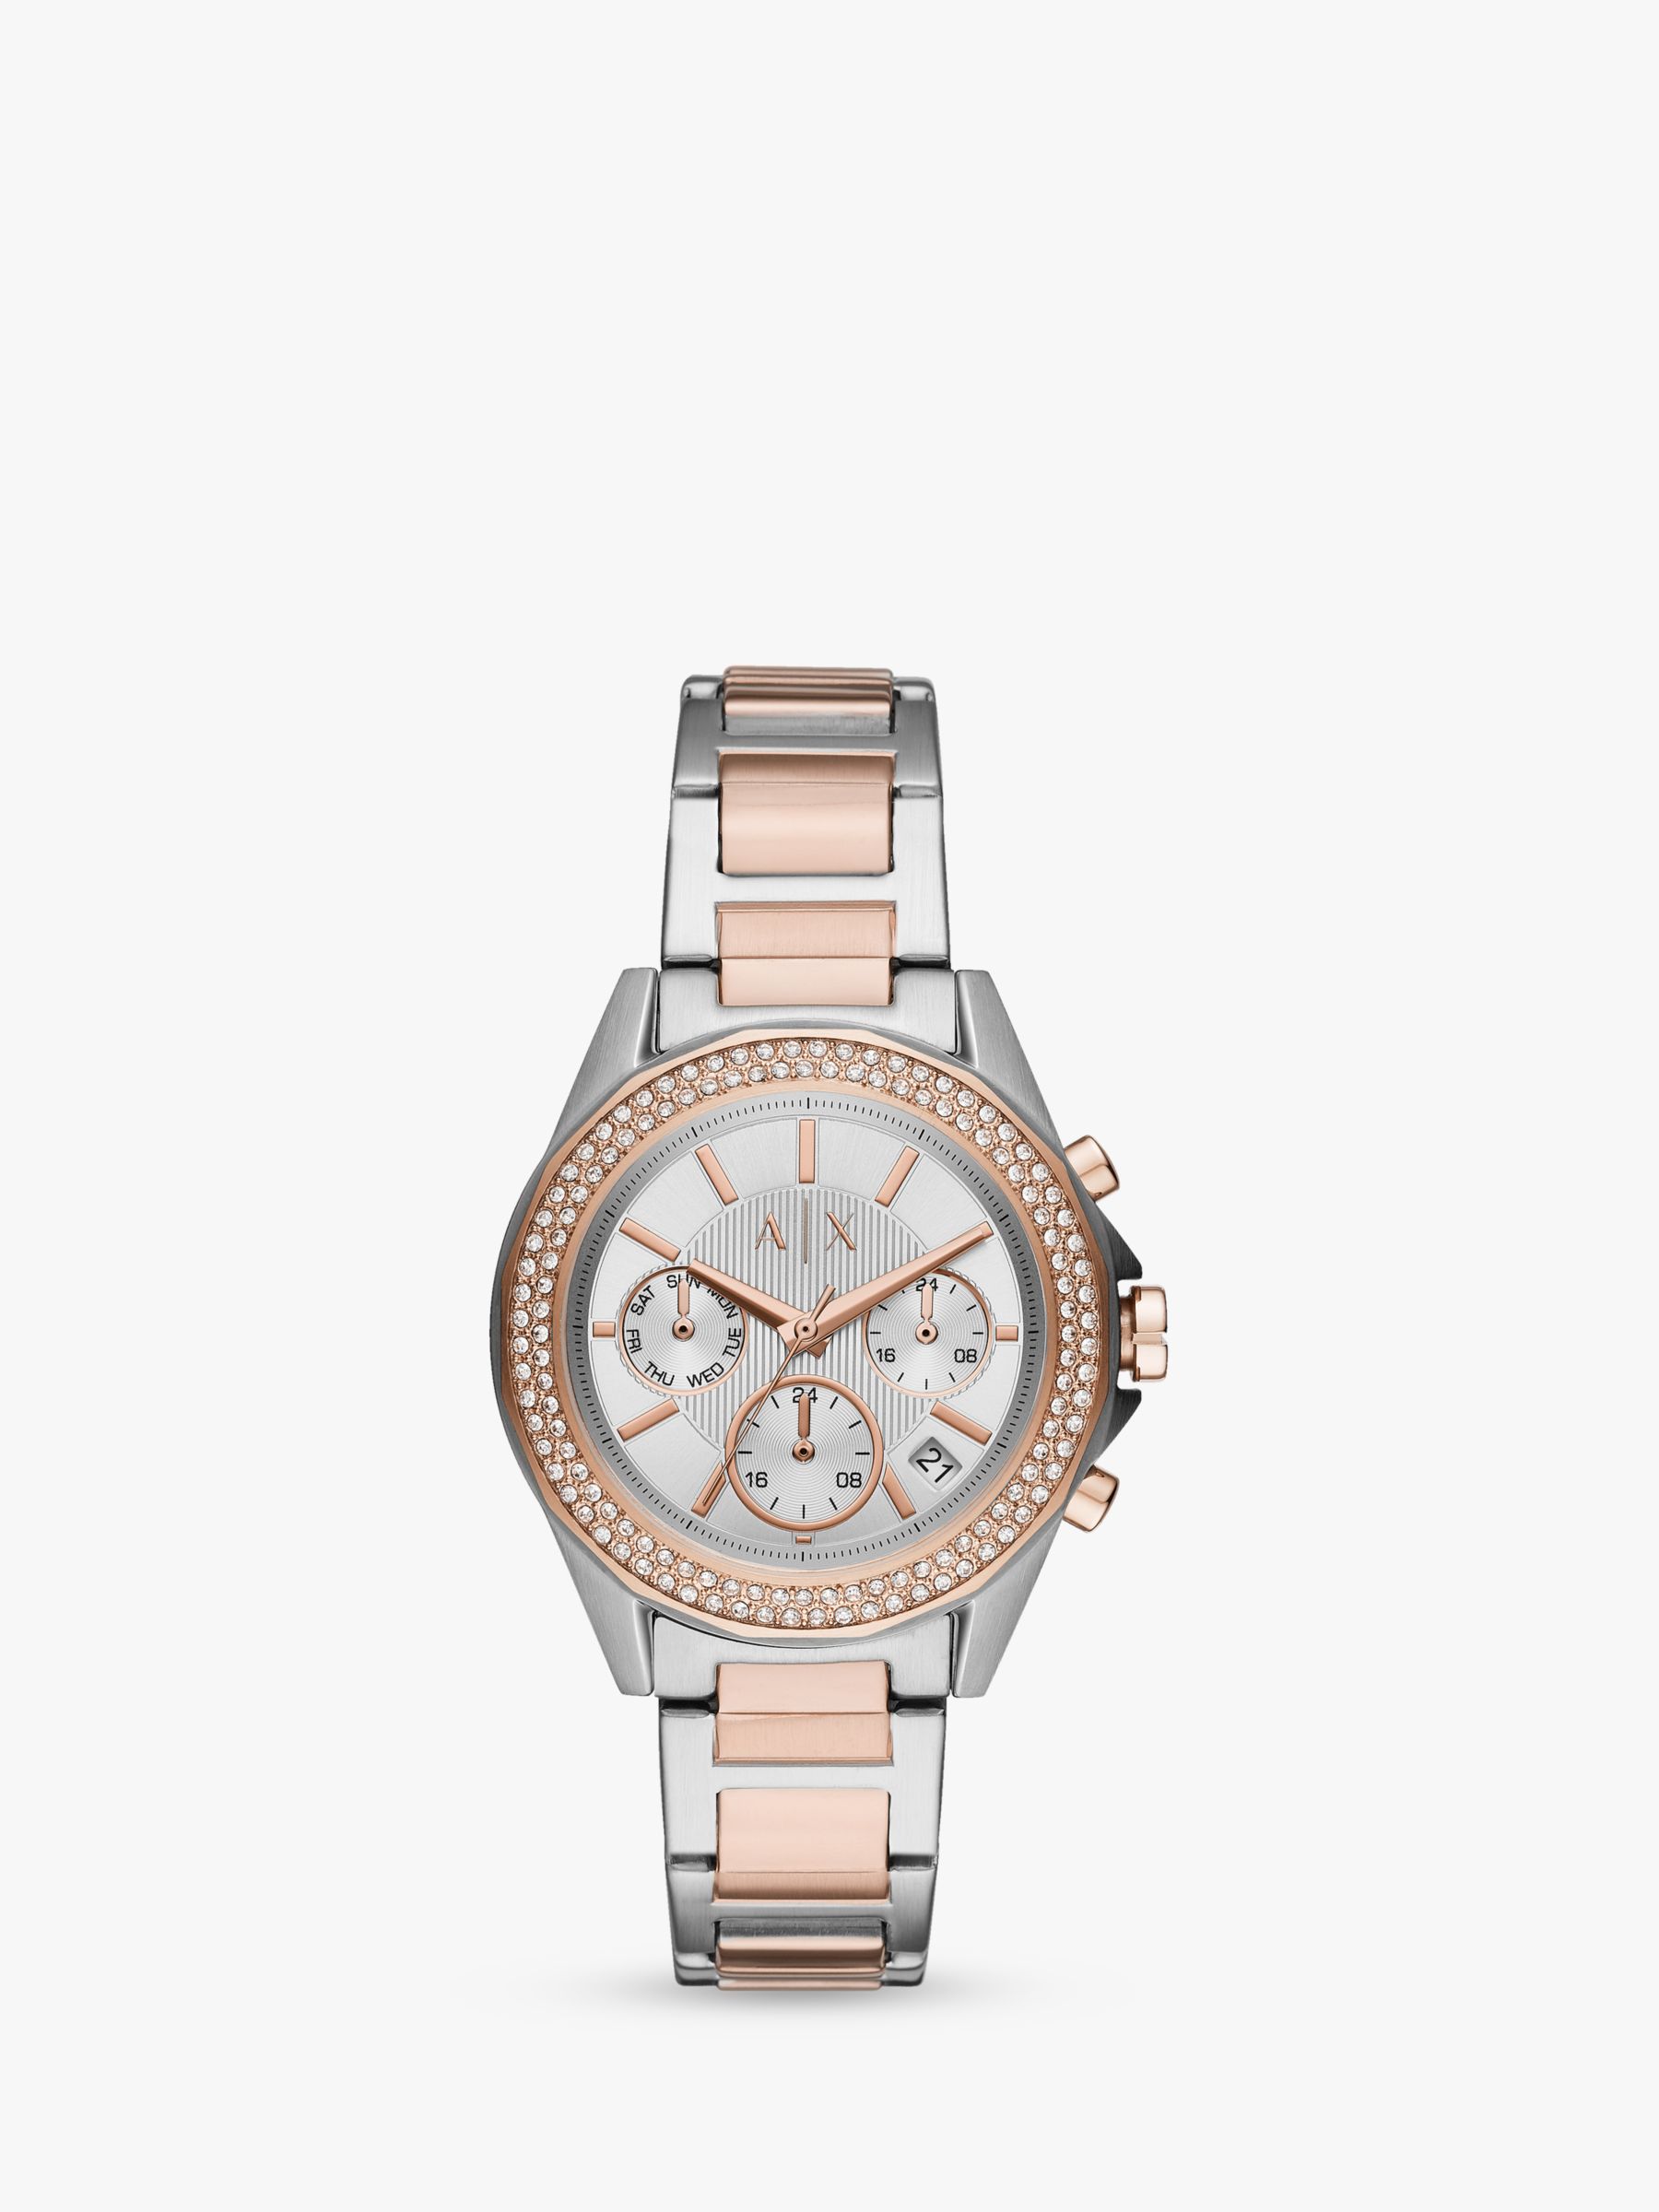 armani exchange women's watch silver